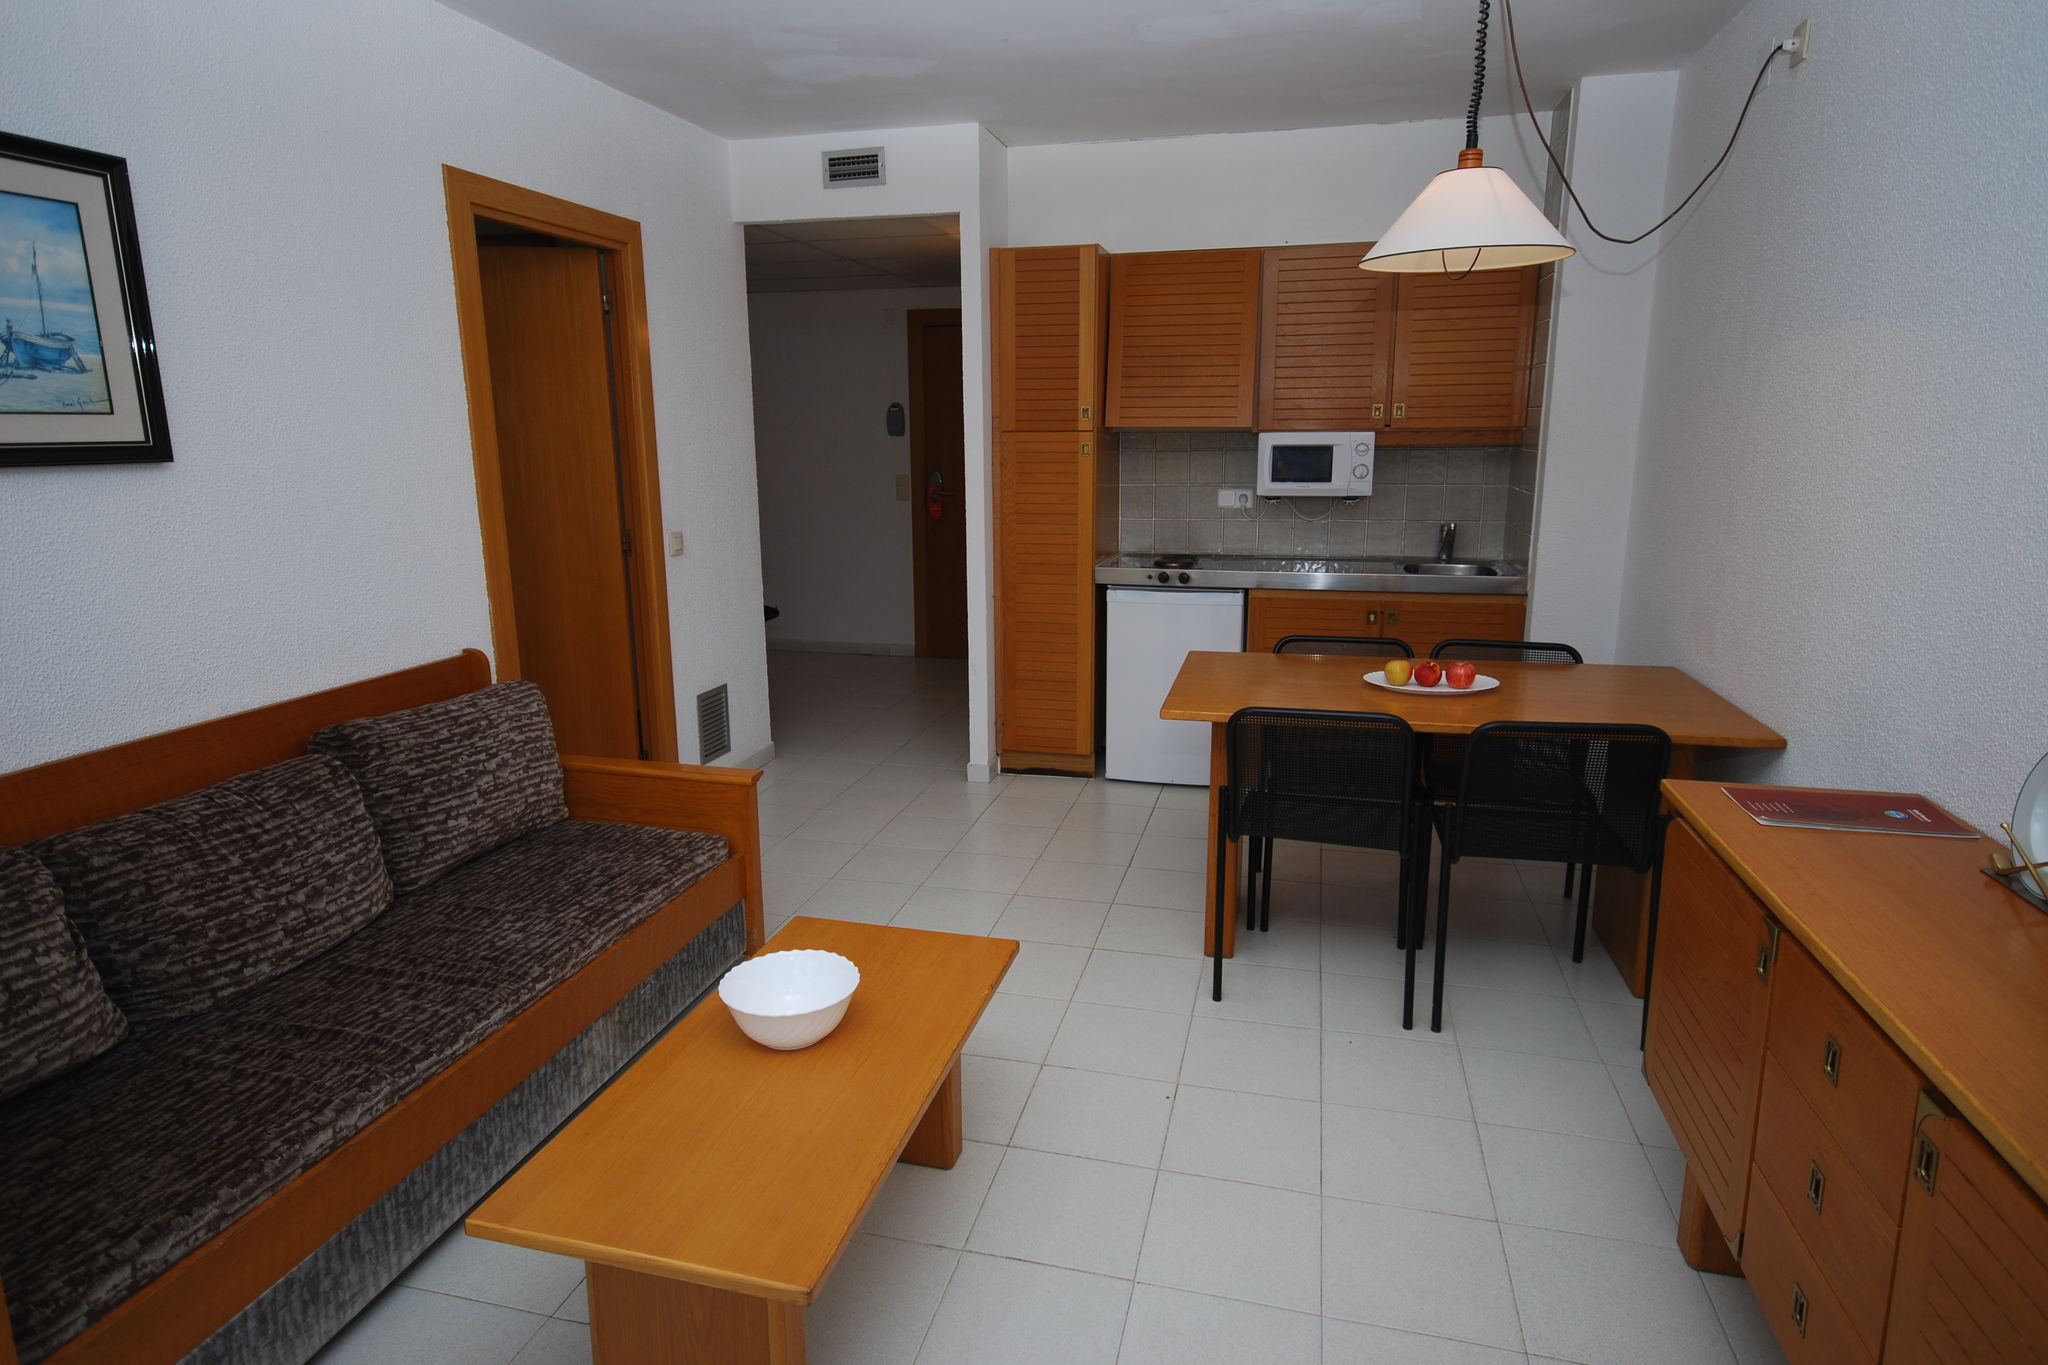 Appartement confortable avec climatisation, 900 m plage